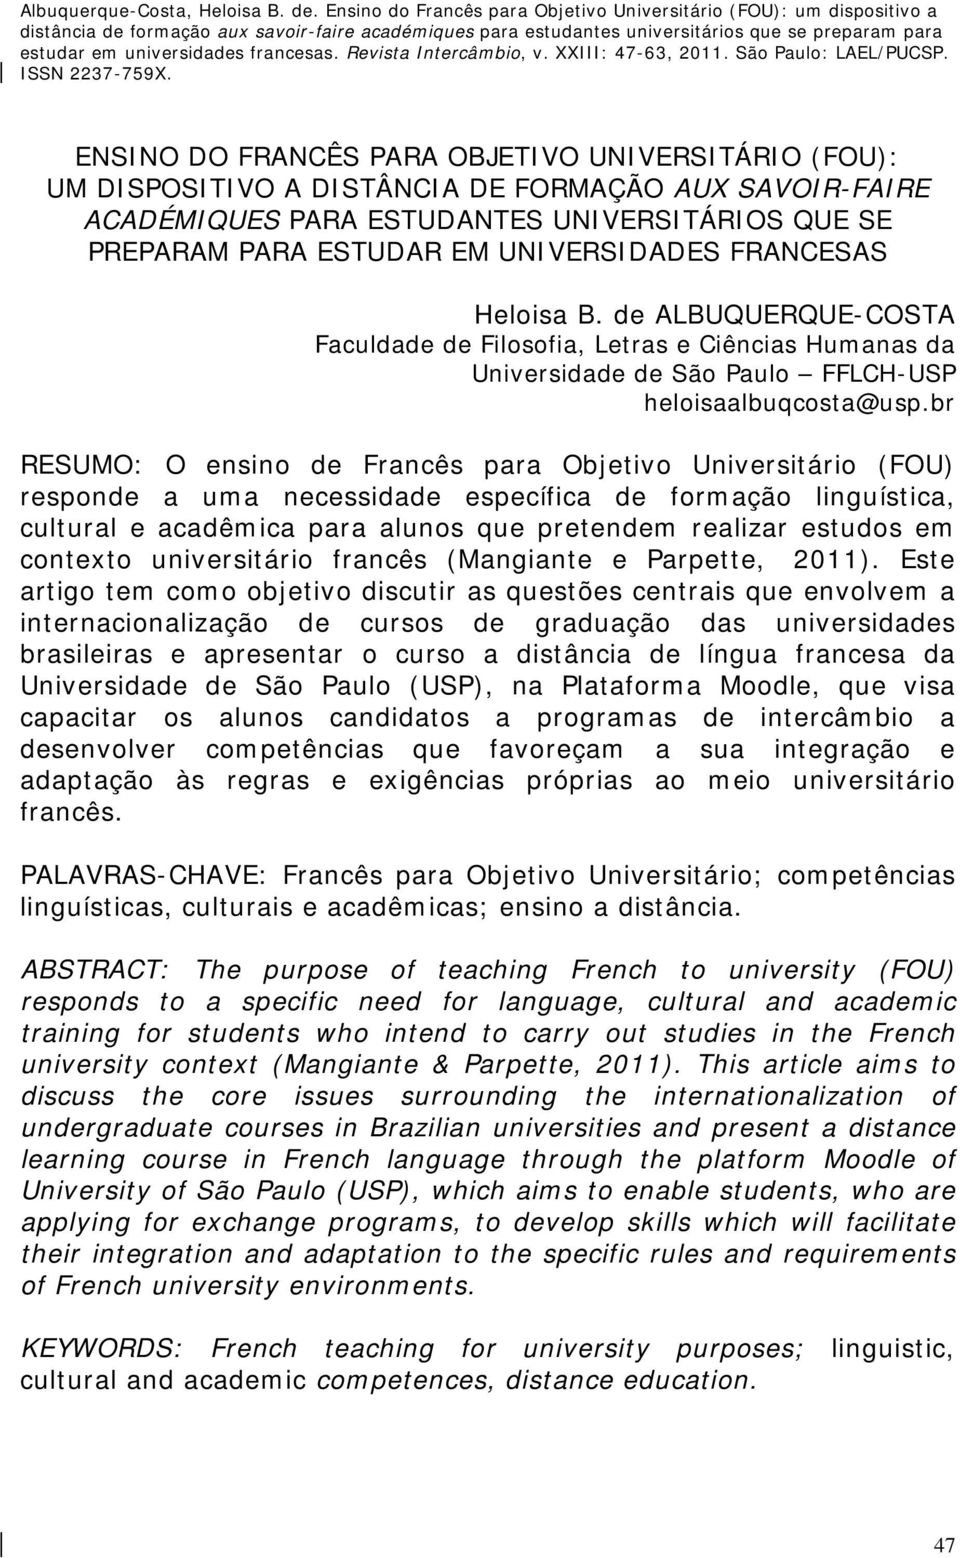 br RESUMO: O ensino de Francês para Objetivo Universitário (FOU) responde a uma necessidade específica de formação linguística, cultural e acadêmica para alunos que pretendem realizar estudos em